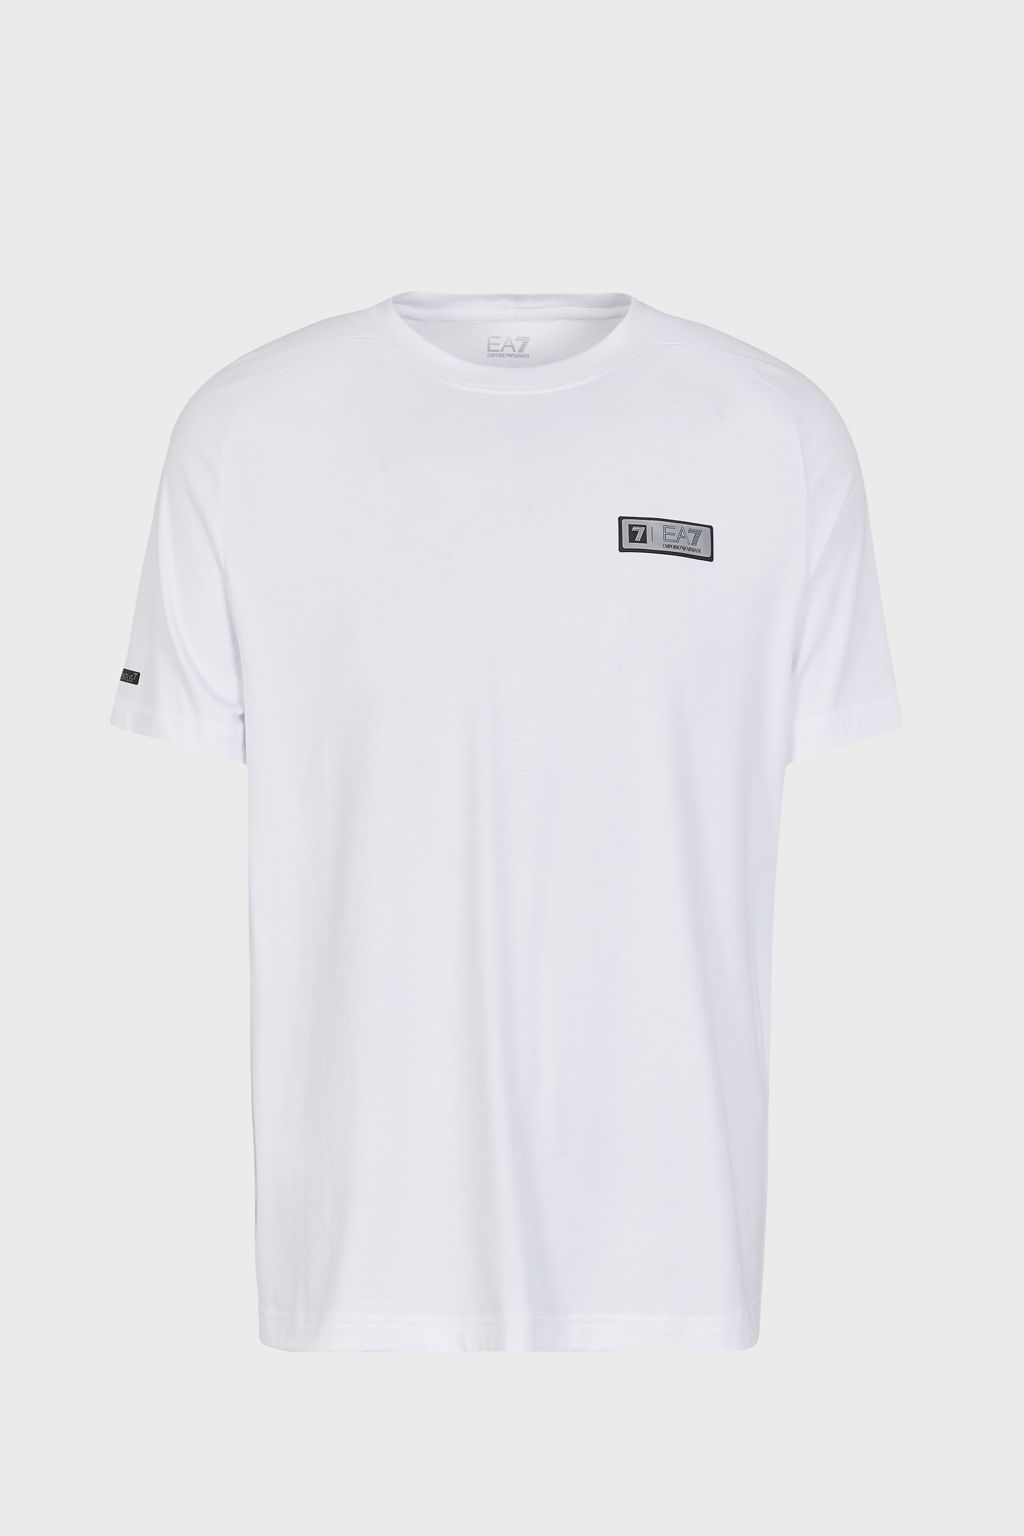 EA7 Emporio Armani T-shirt Wit heren (T-SHIRT - WIT - 6RPT22.PJMAZ.1100) - GL Sport (Sluis)